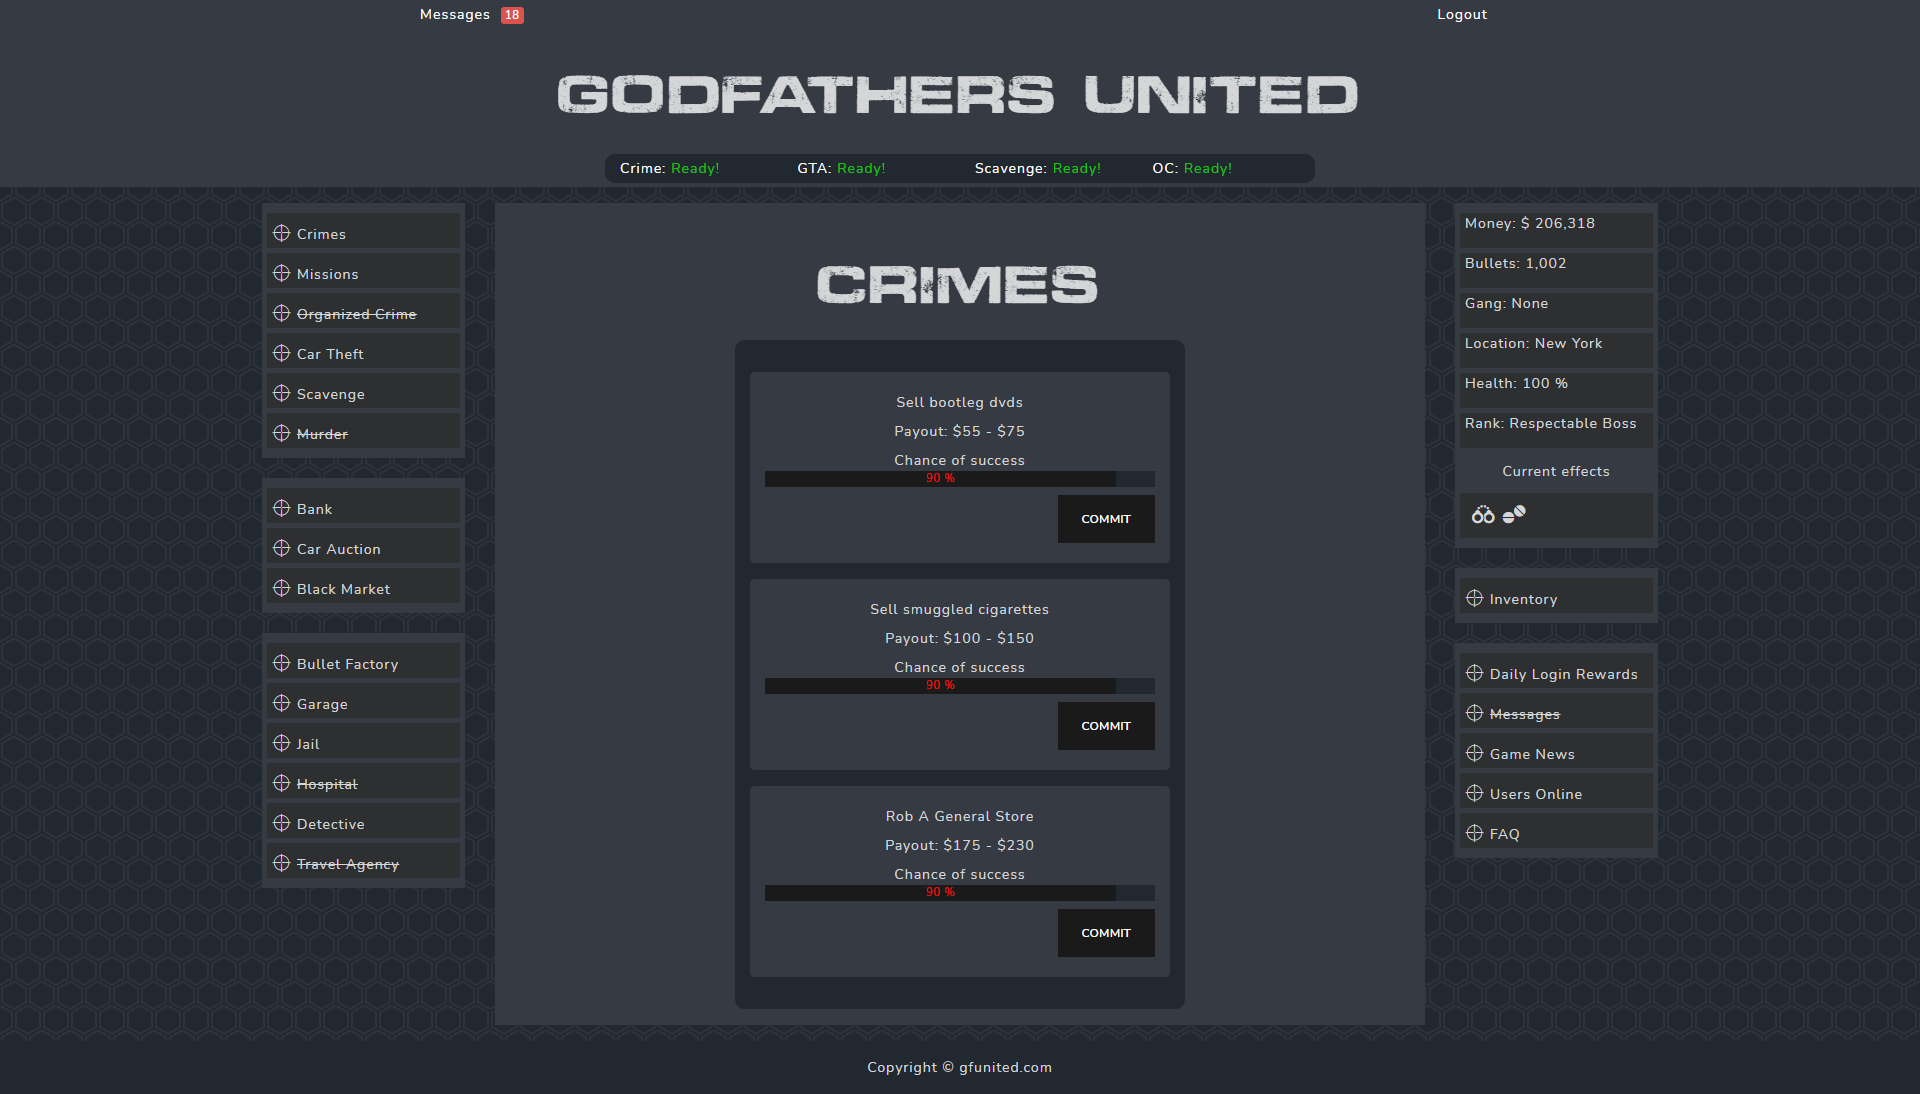 Godfathers United